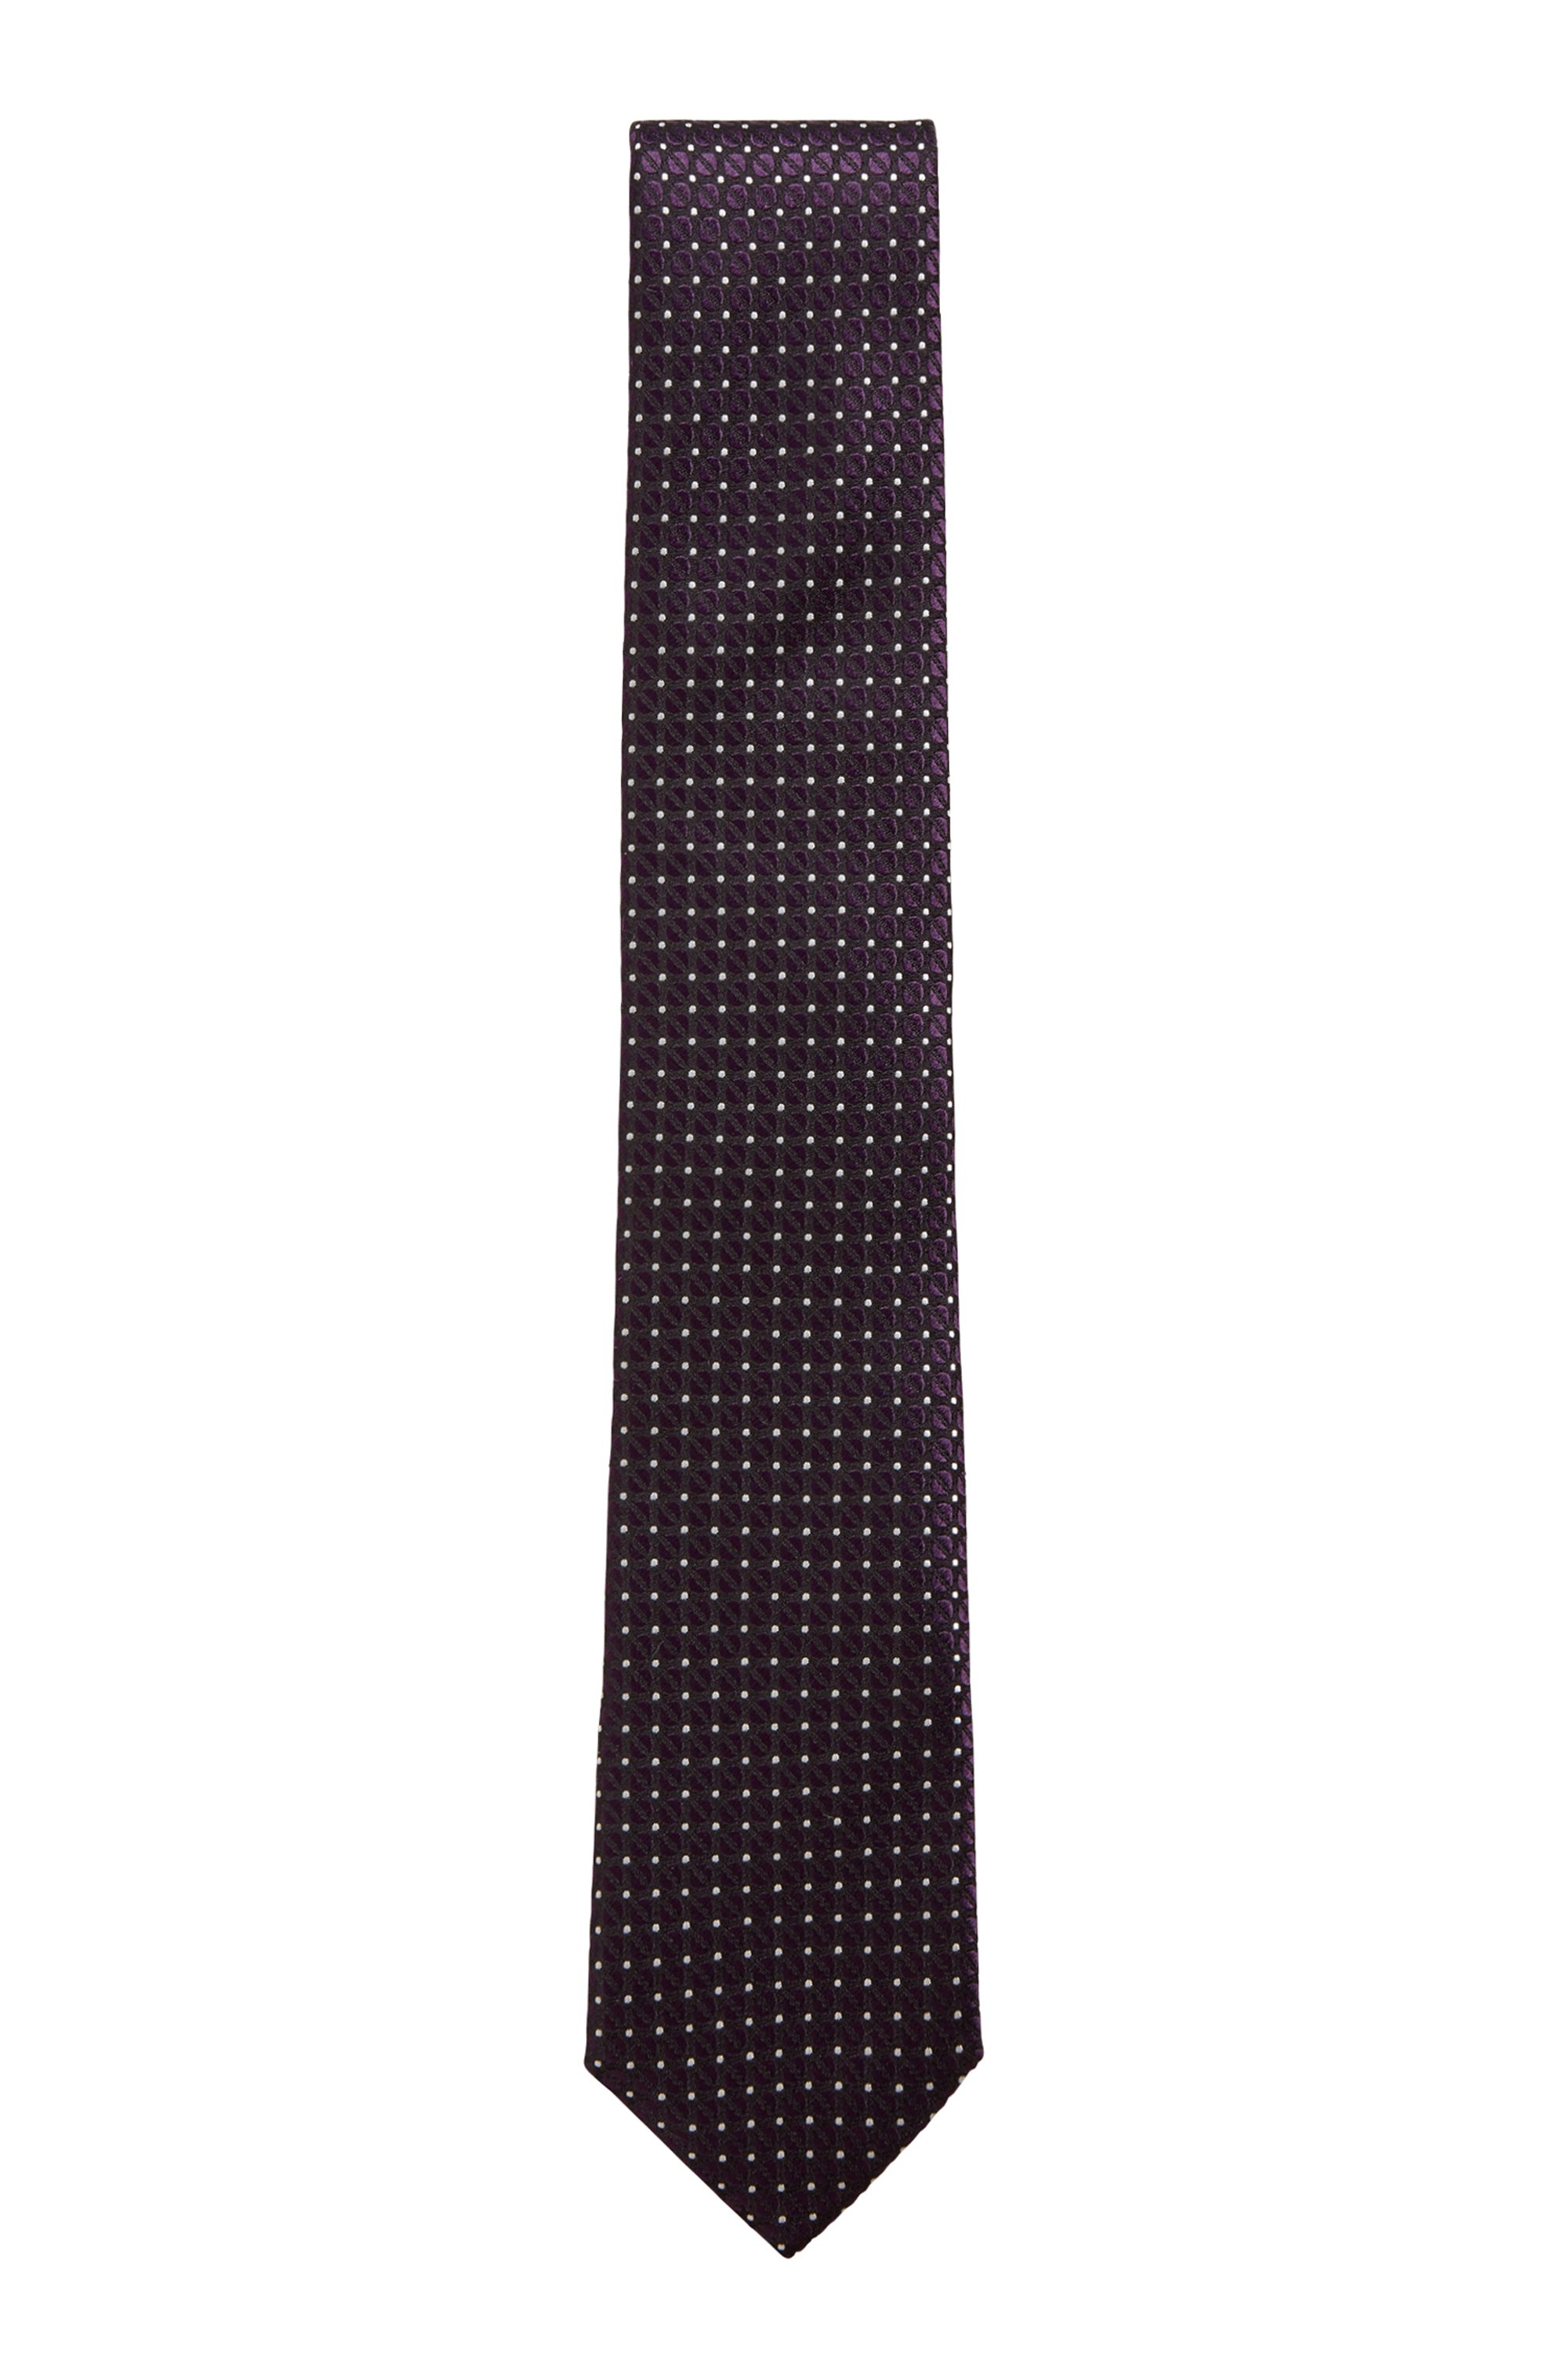 Jacquard-patterned tie in water-repellent silk, Dark Purple